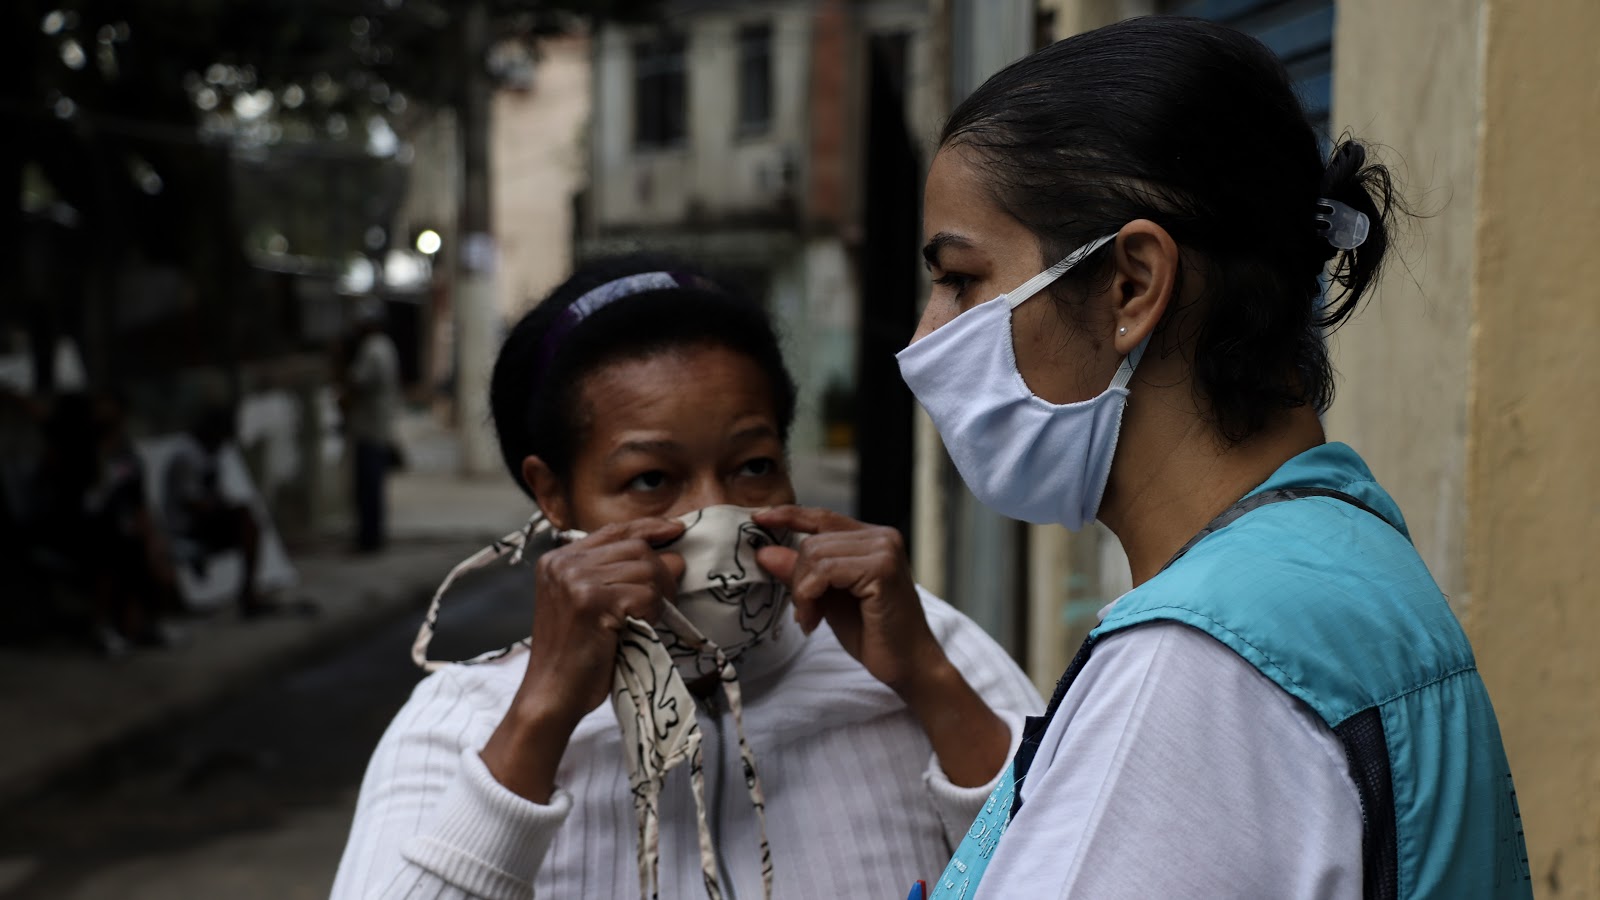 Ainda segundo pesquisa, 89% dos agentes comunitários tê medo de se contaminar durante a pandemia. Na foto, agentes comunitários de saúde no Rio de Janeiro / Crédito: Rio Watch